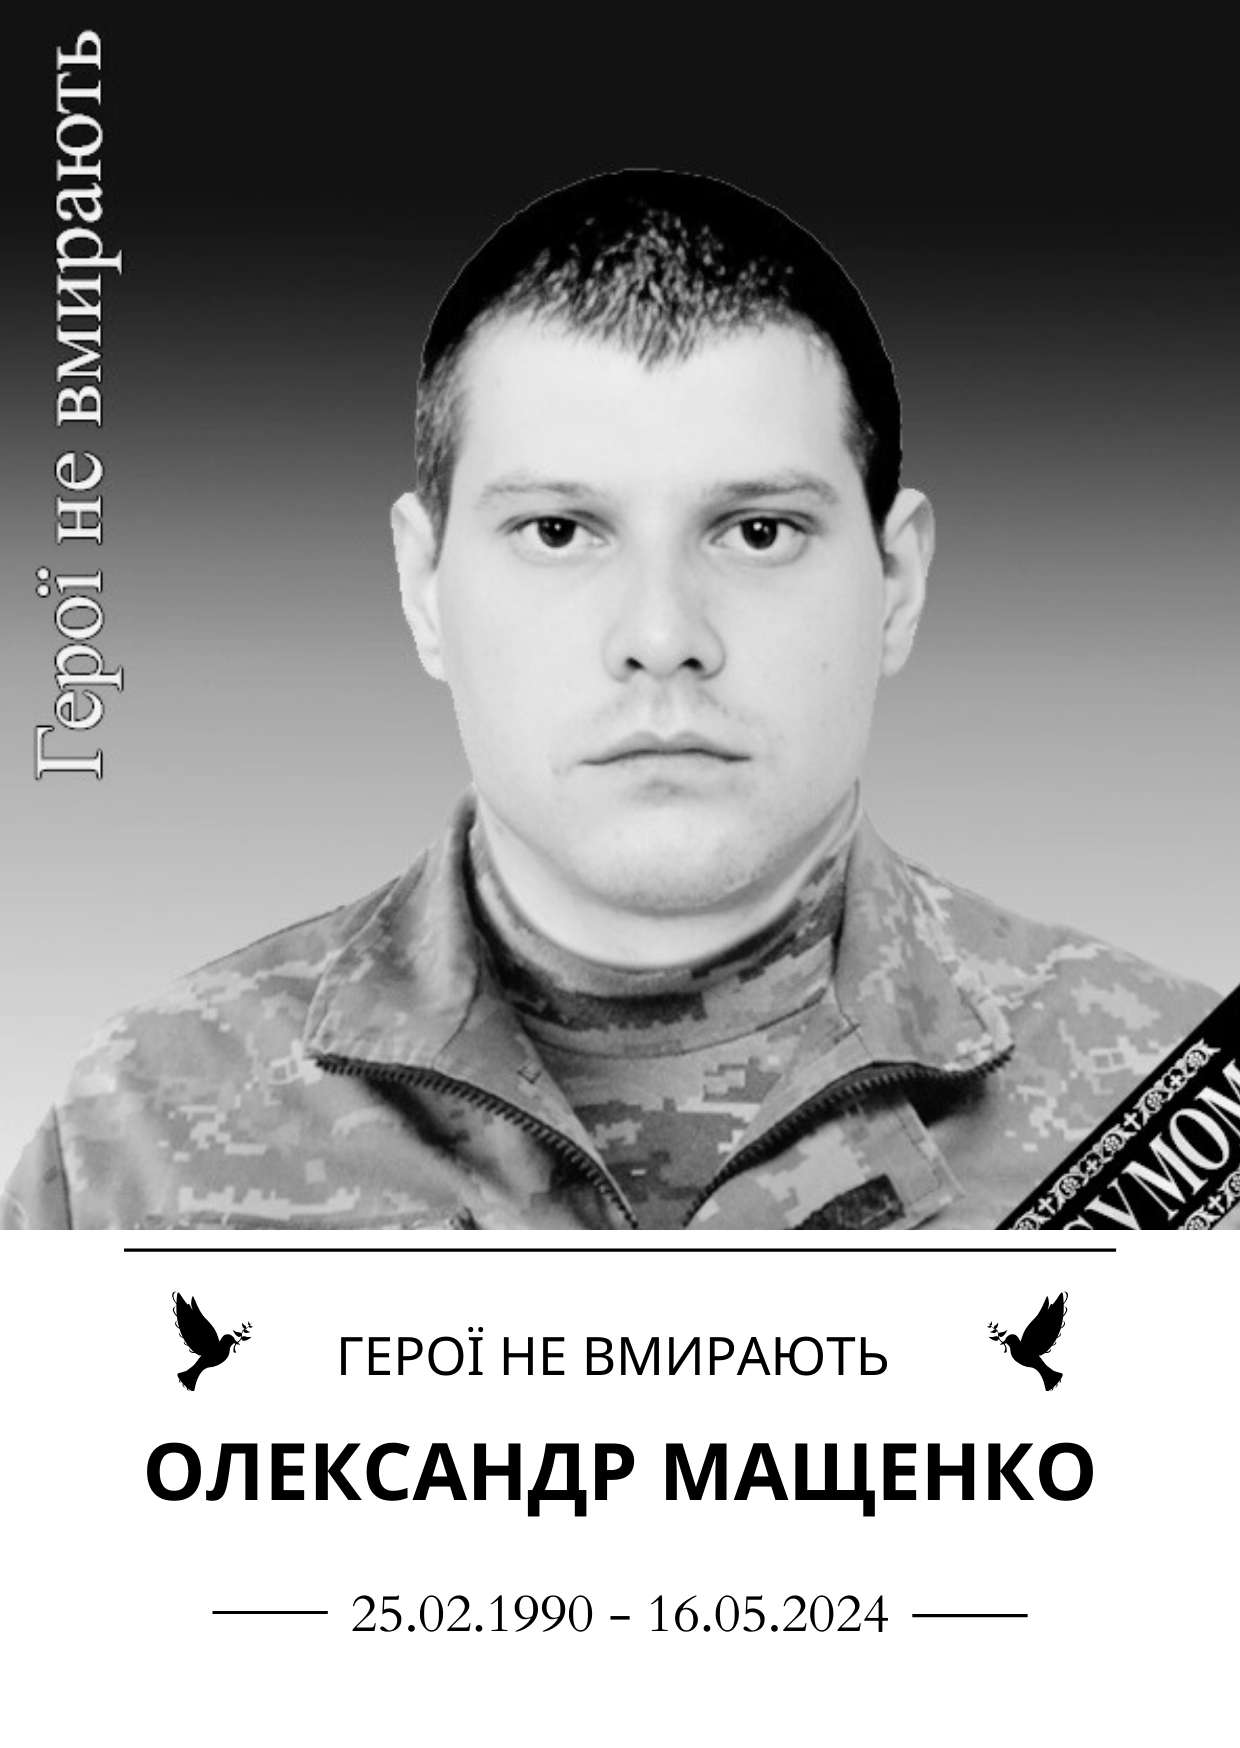 Олександр Мащенко Роки життя 25.02.1990-16.05.2024 Герої не вмирають